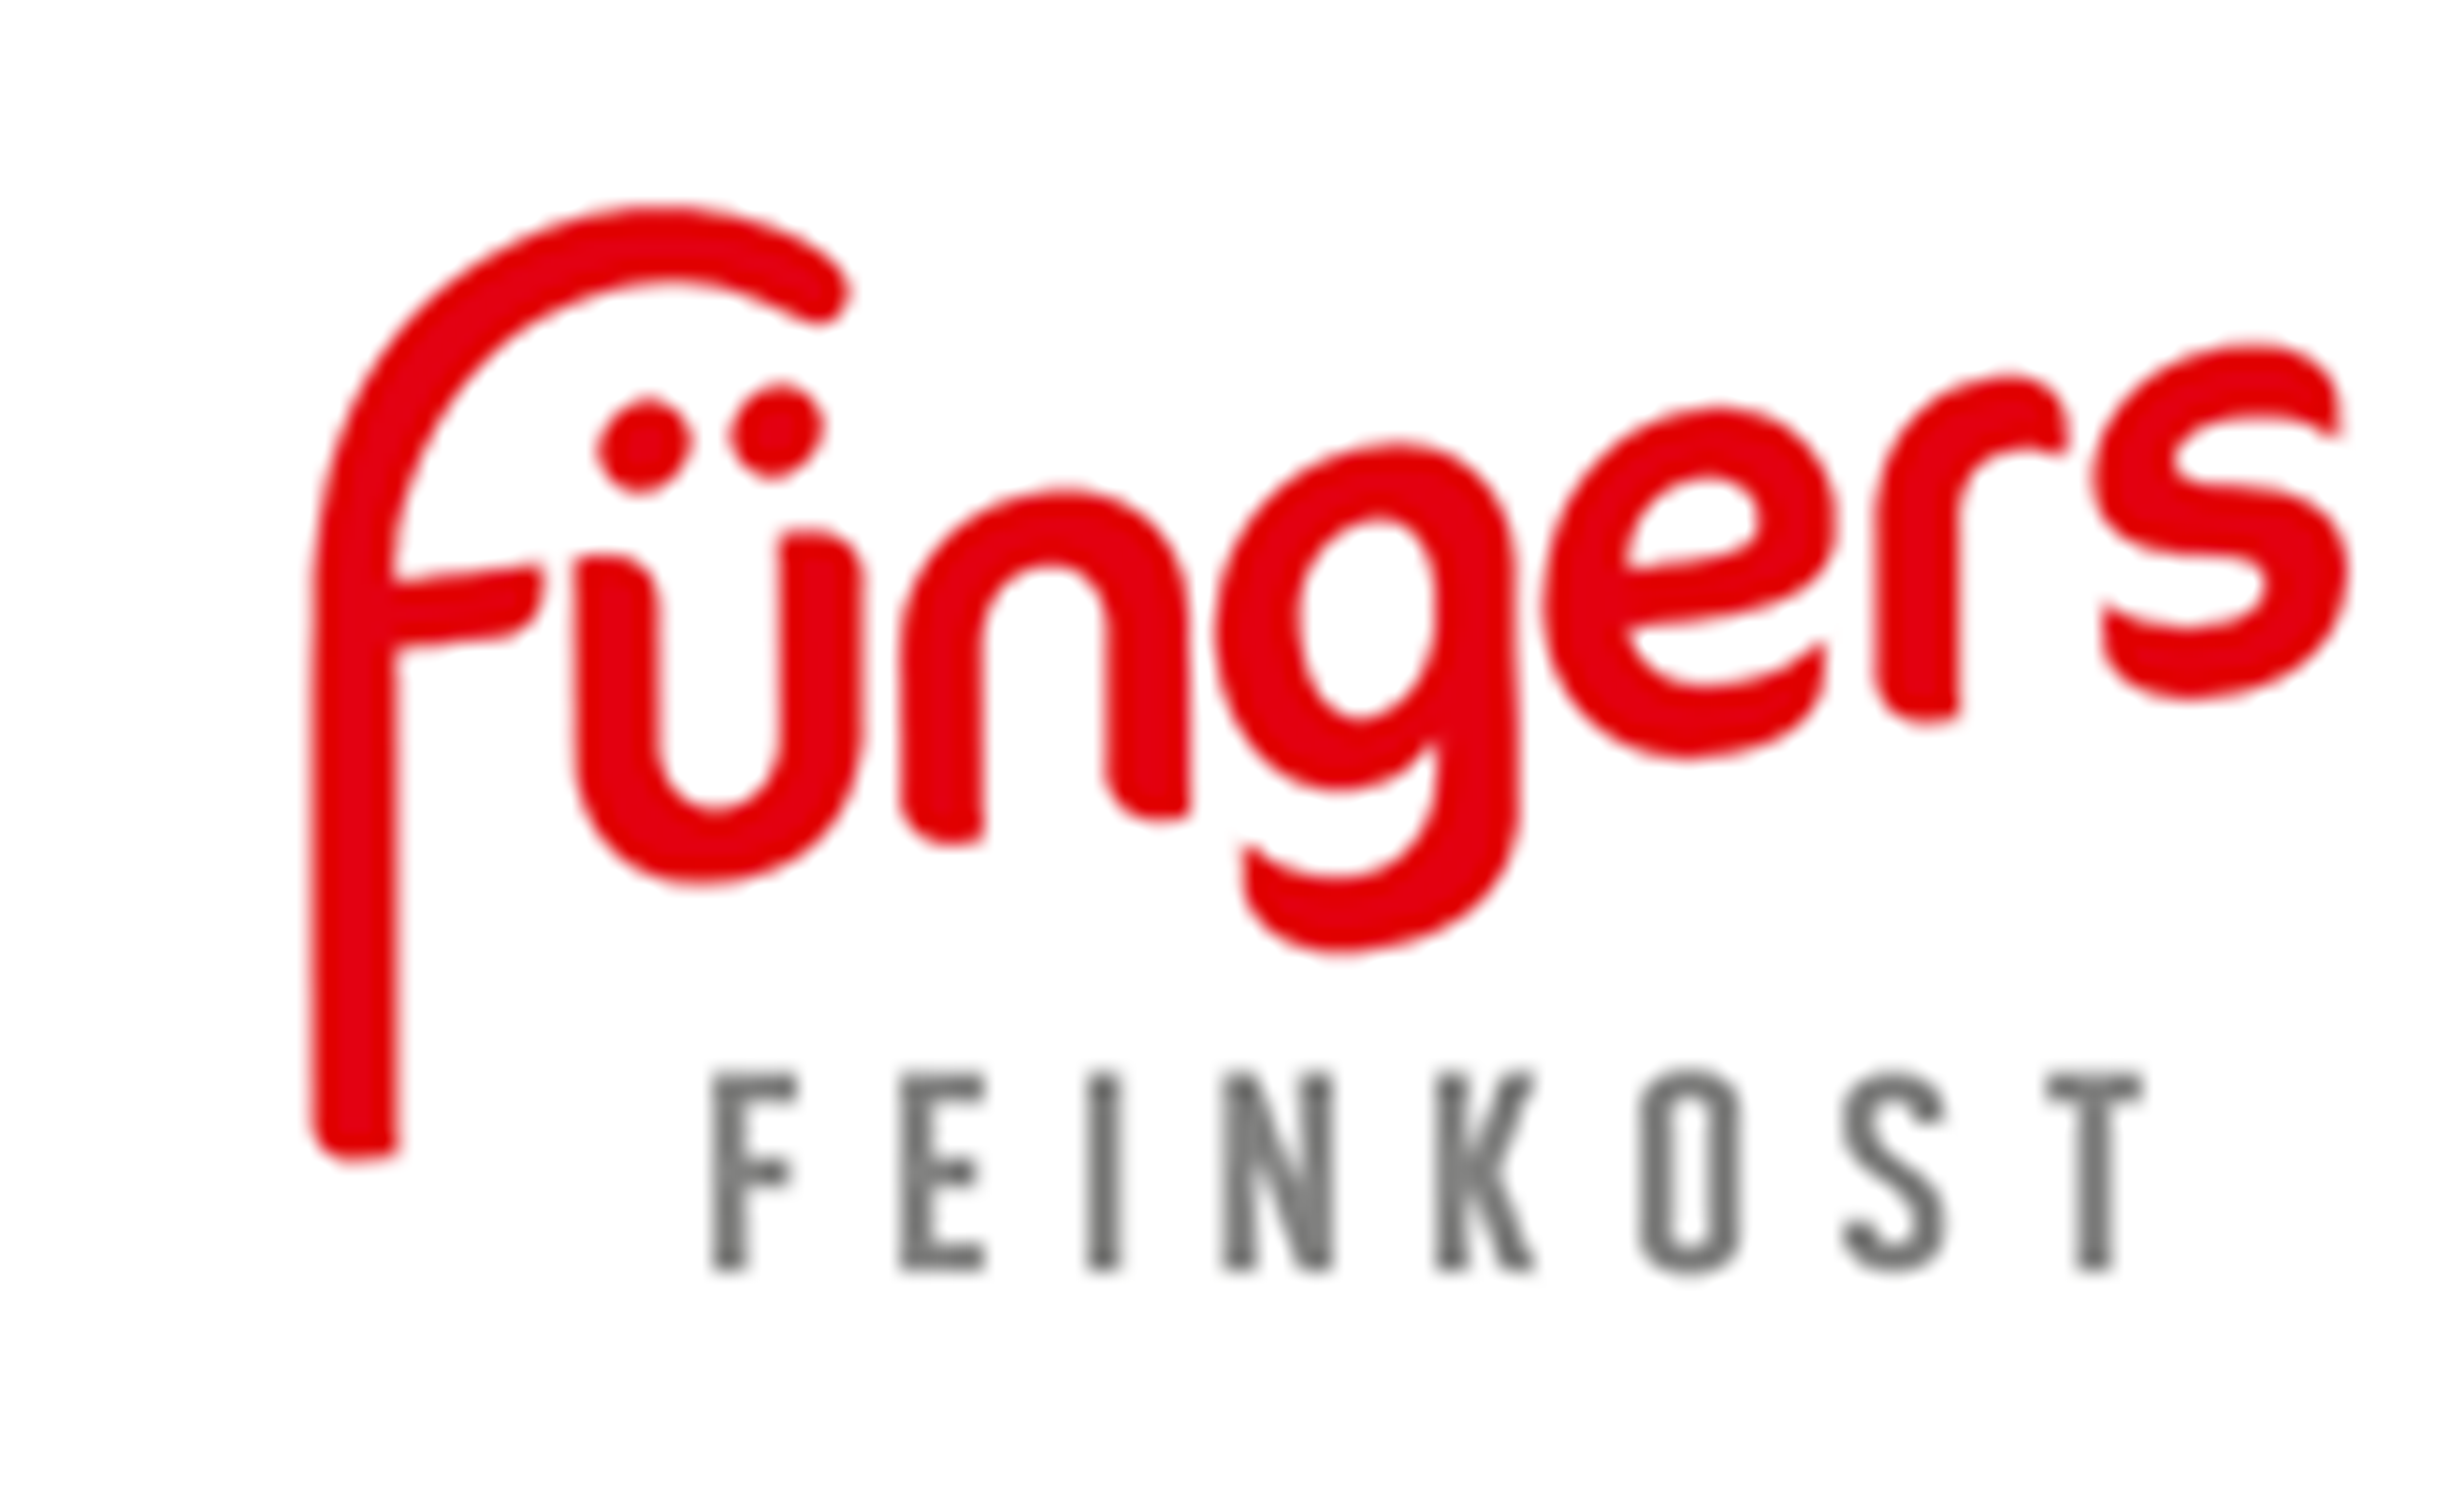 Fuengers Feinkost GmbH und Co. KG